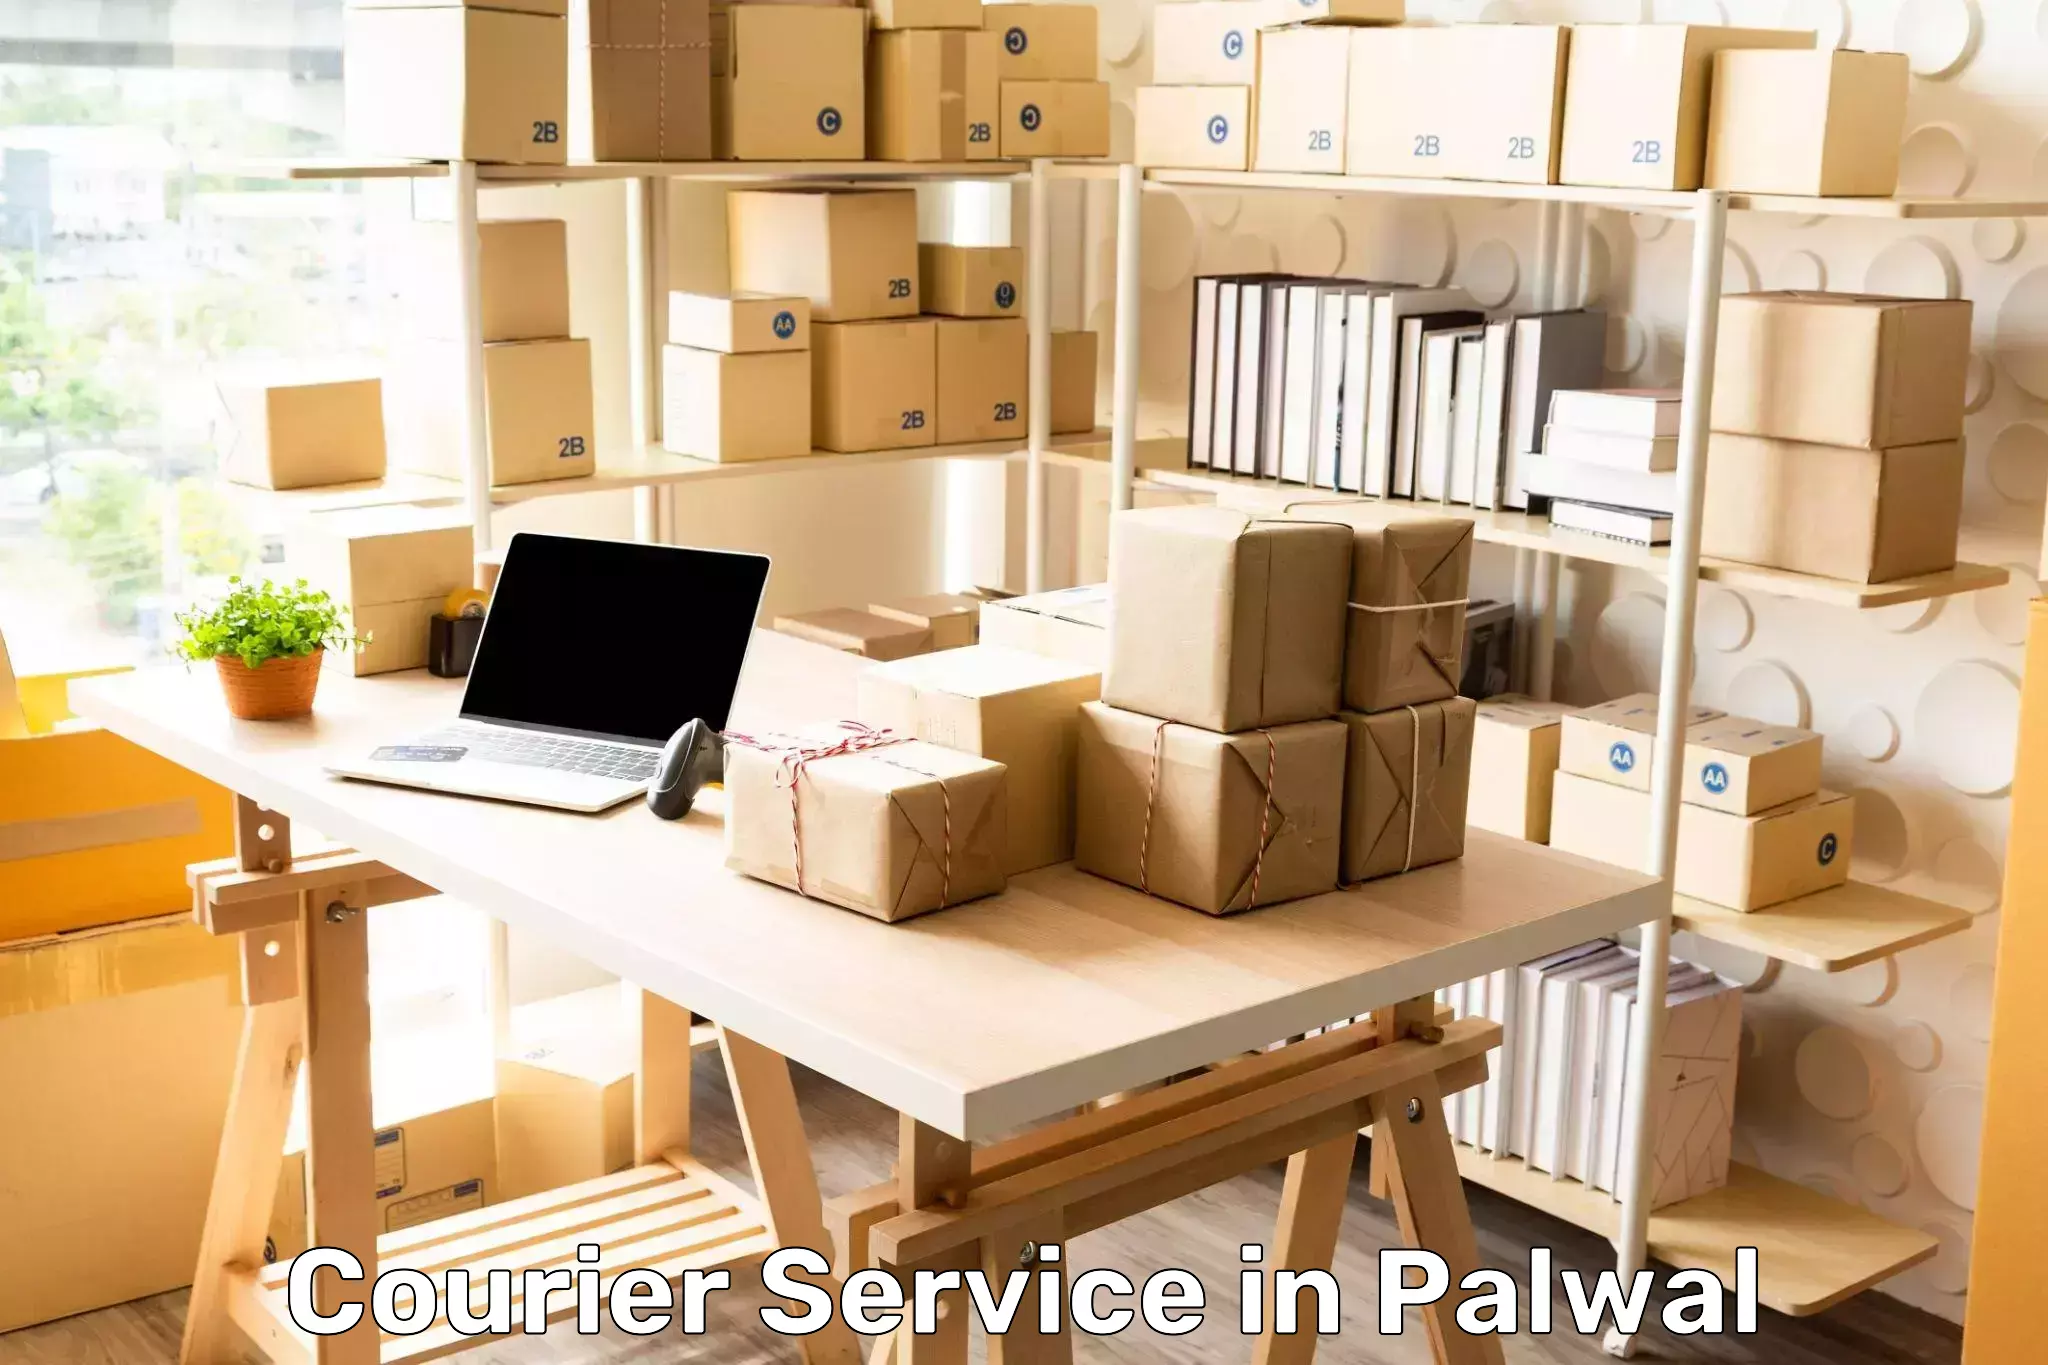 Efficient parcel transport in Palwal